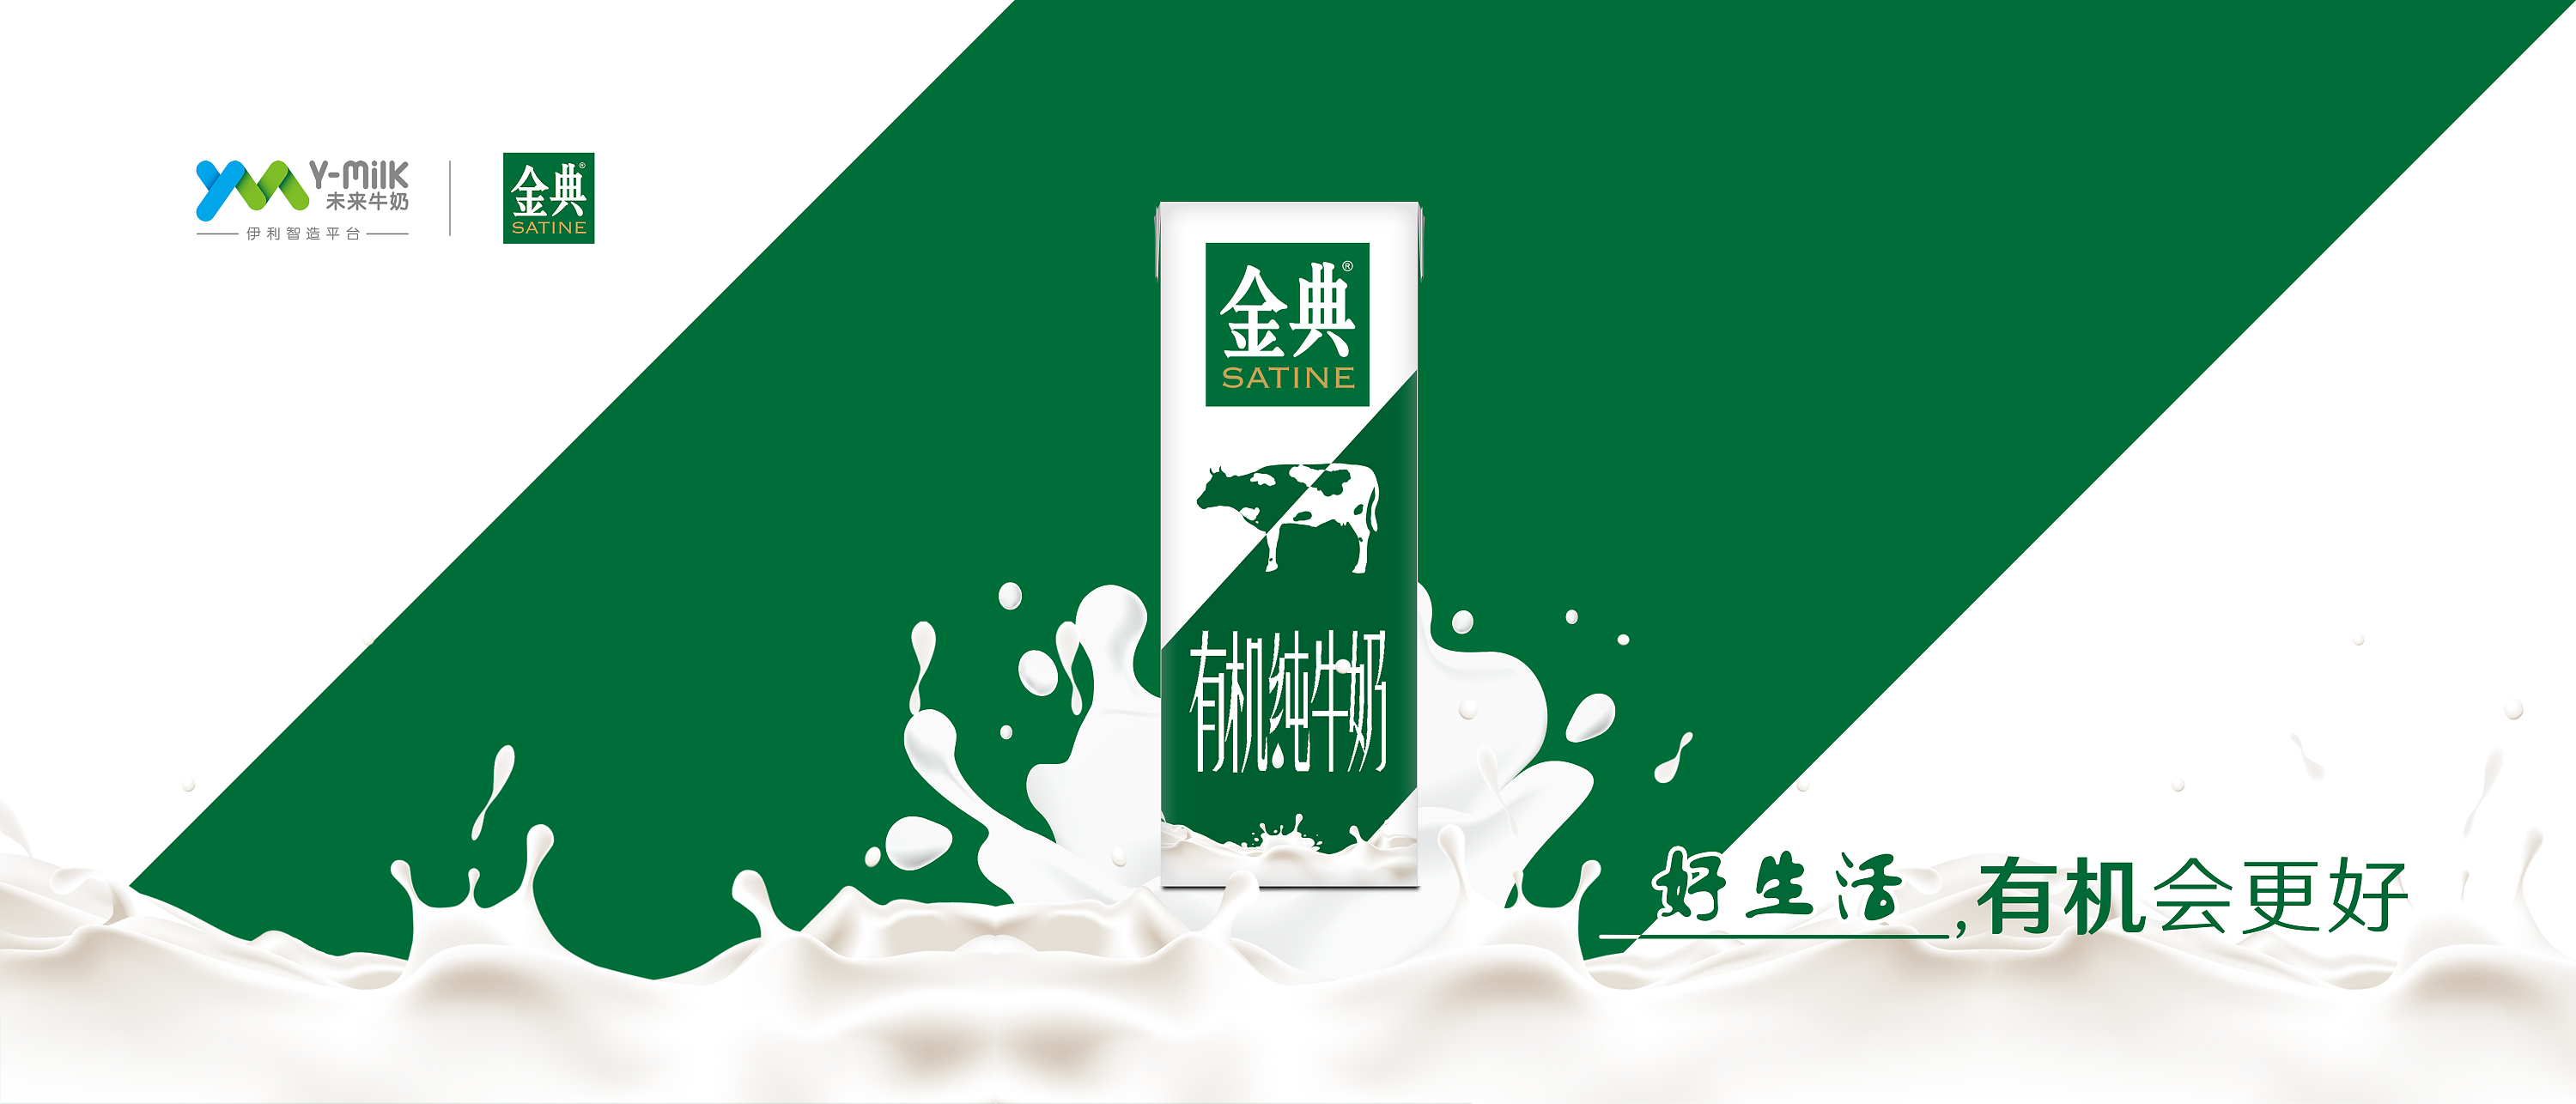 金典有机奶 logo图片